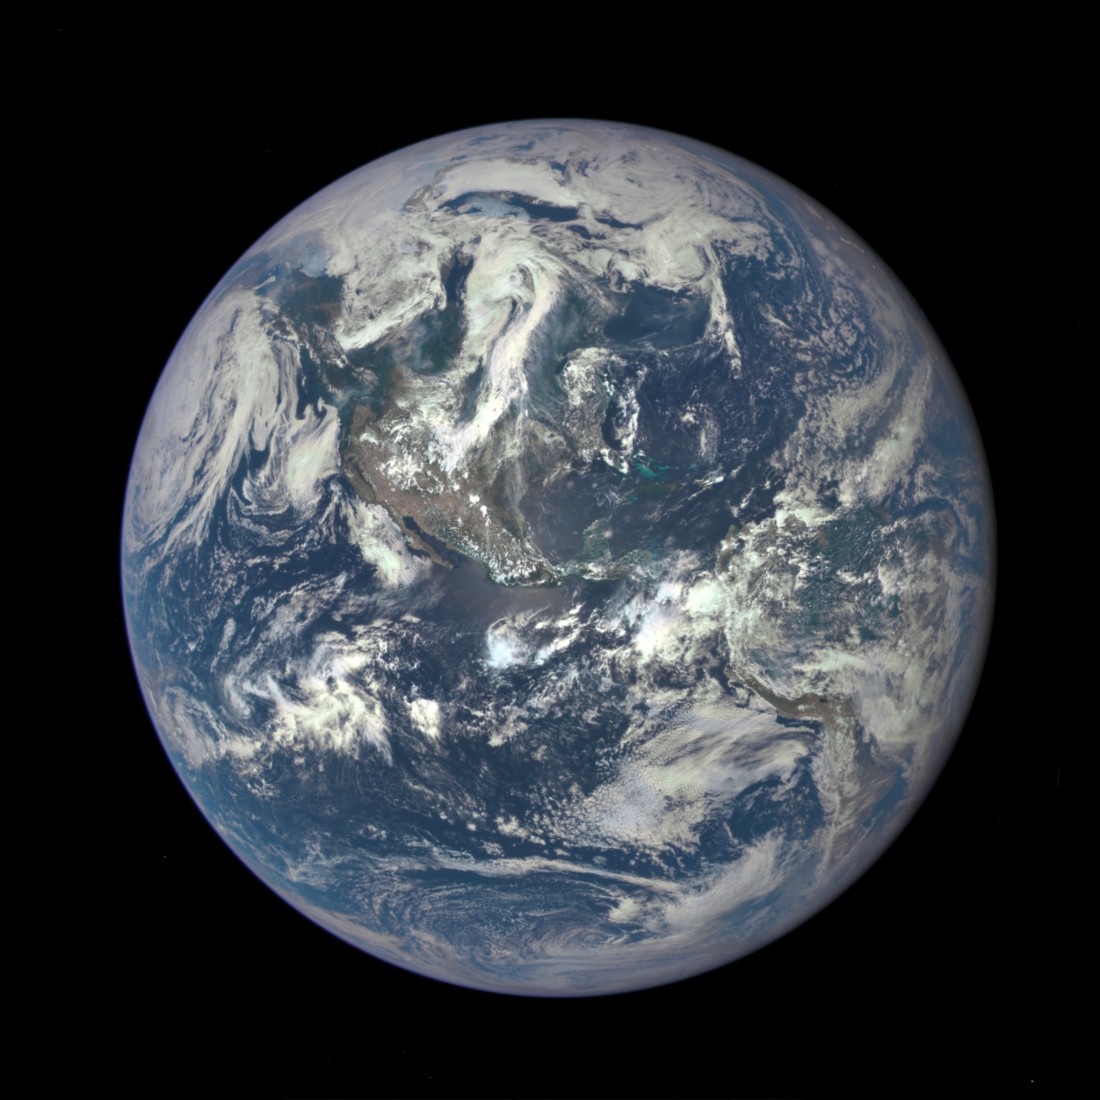 La Terre photographiée par le satellite Discovr à 1,5 millions de kilomètres de distance.